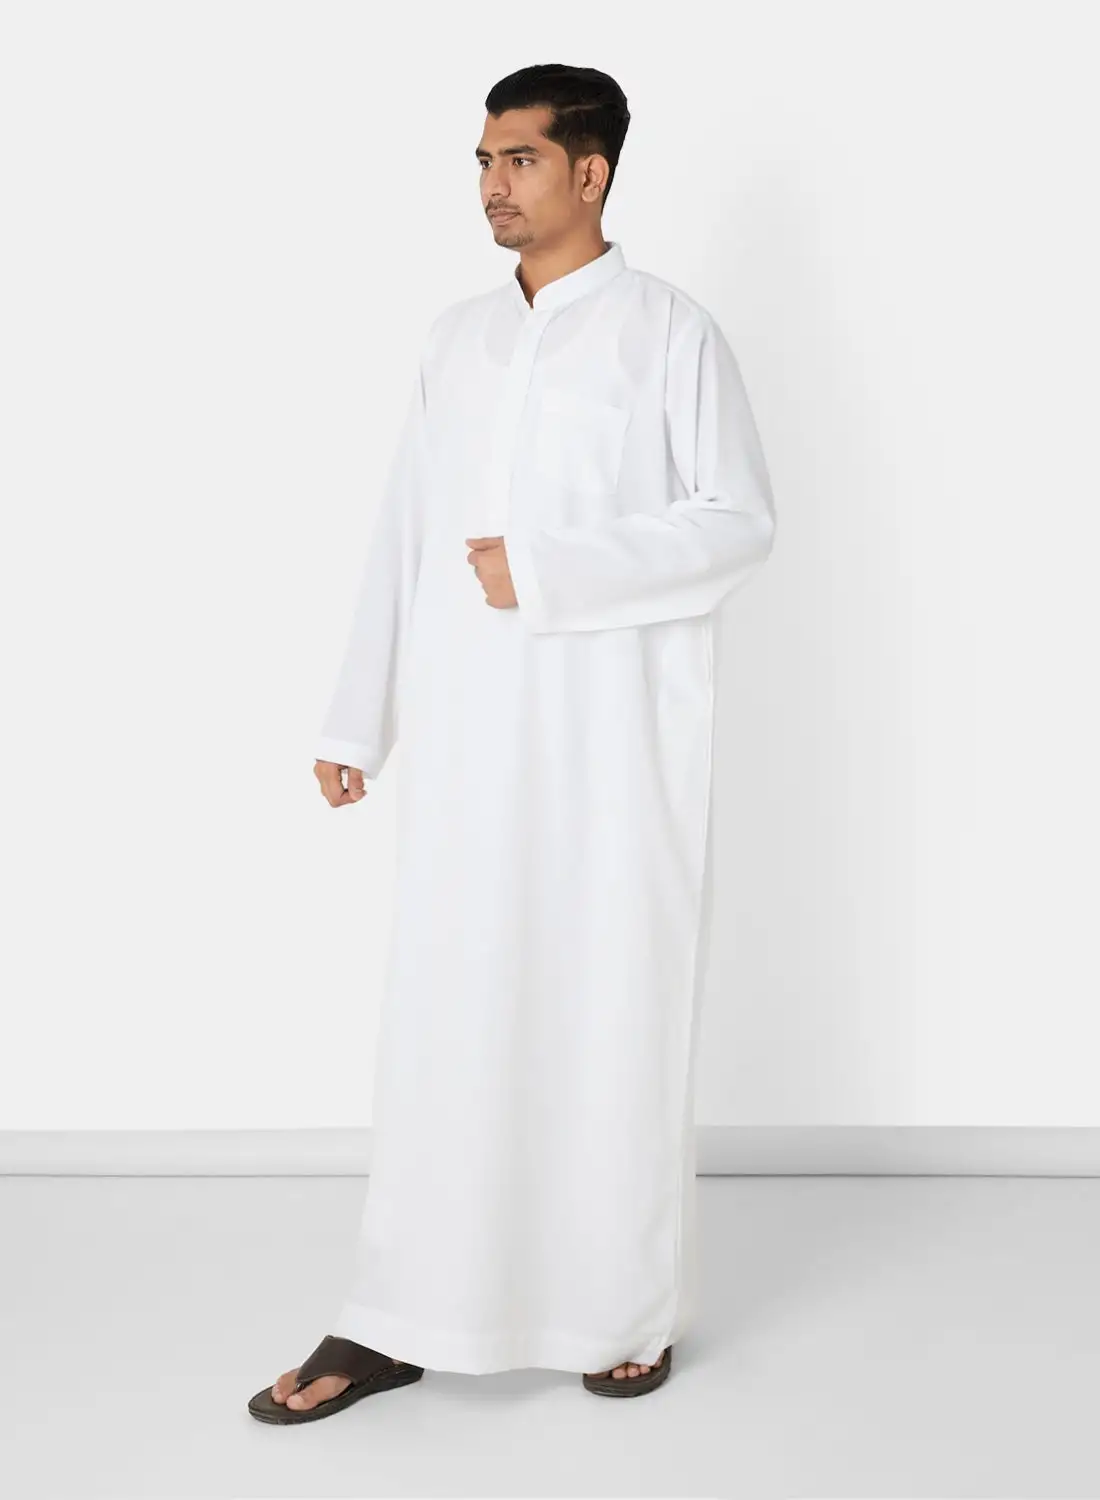 SIVVI for SAQR Premium Chest Pocket Saudi Kandora White